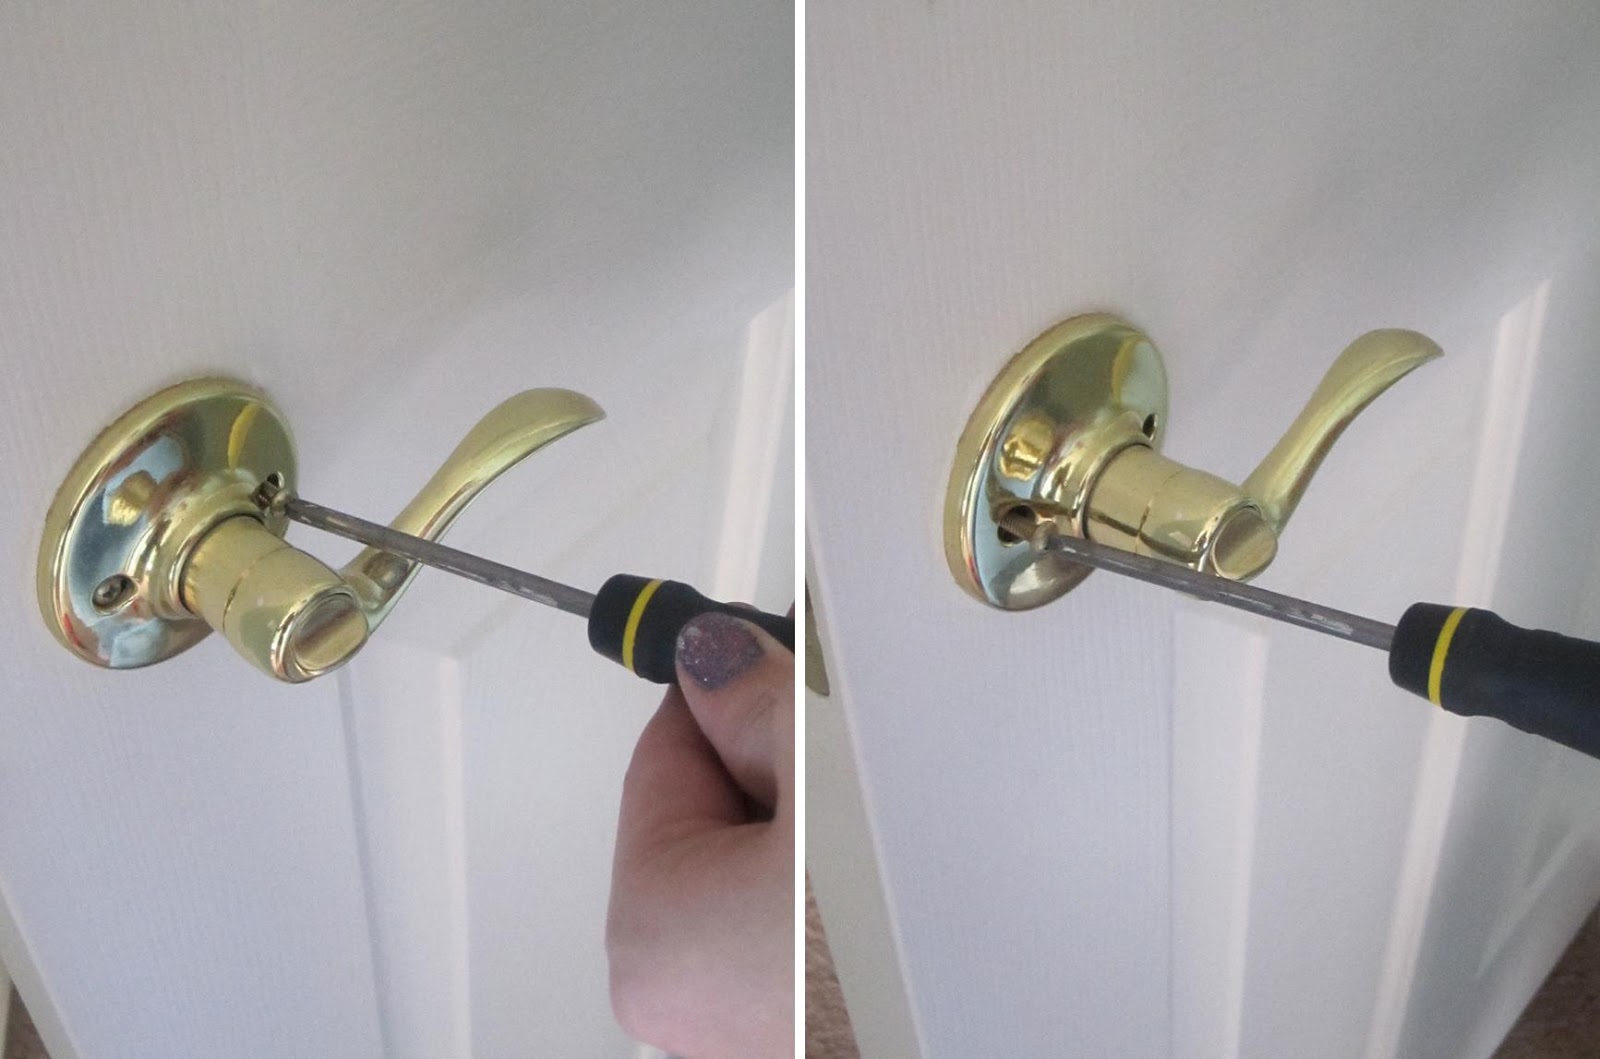 remove a door knob photo - 6